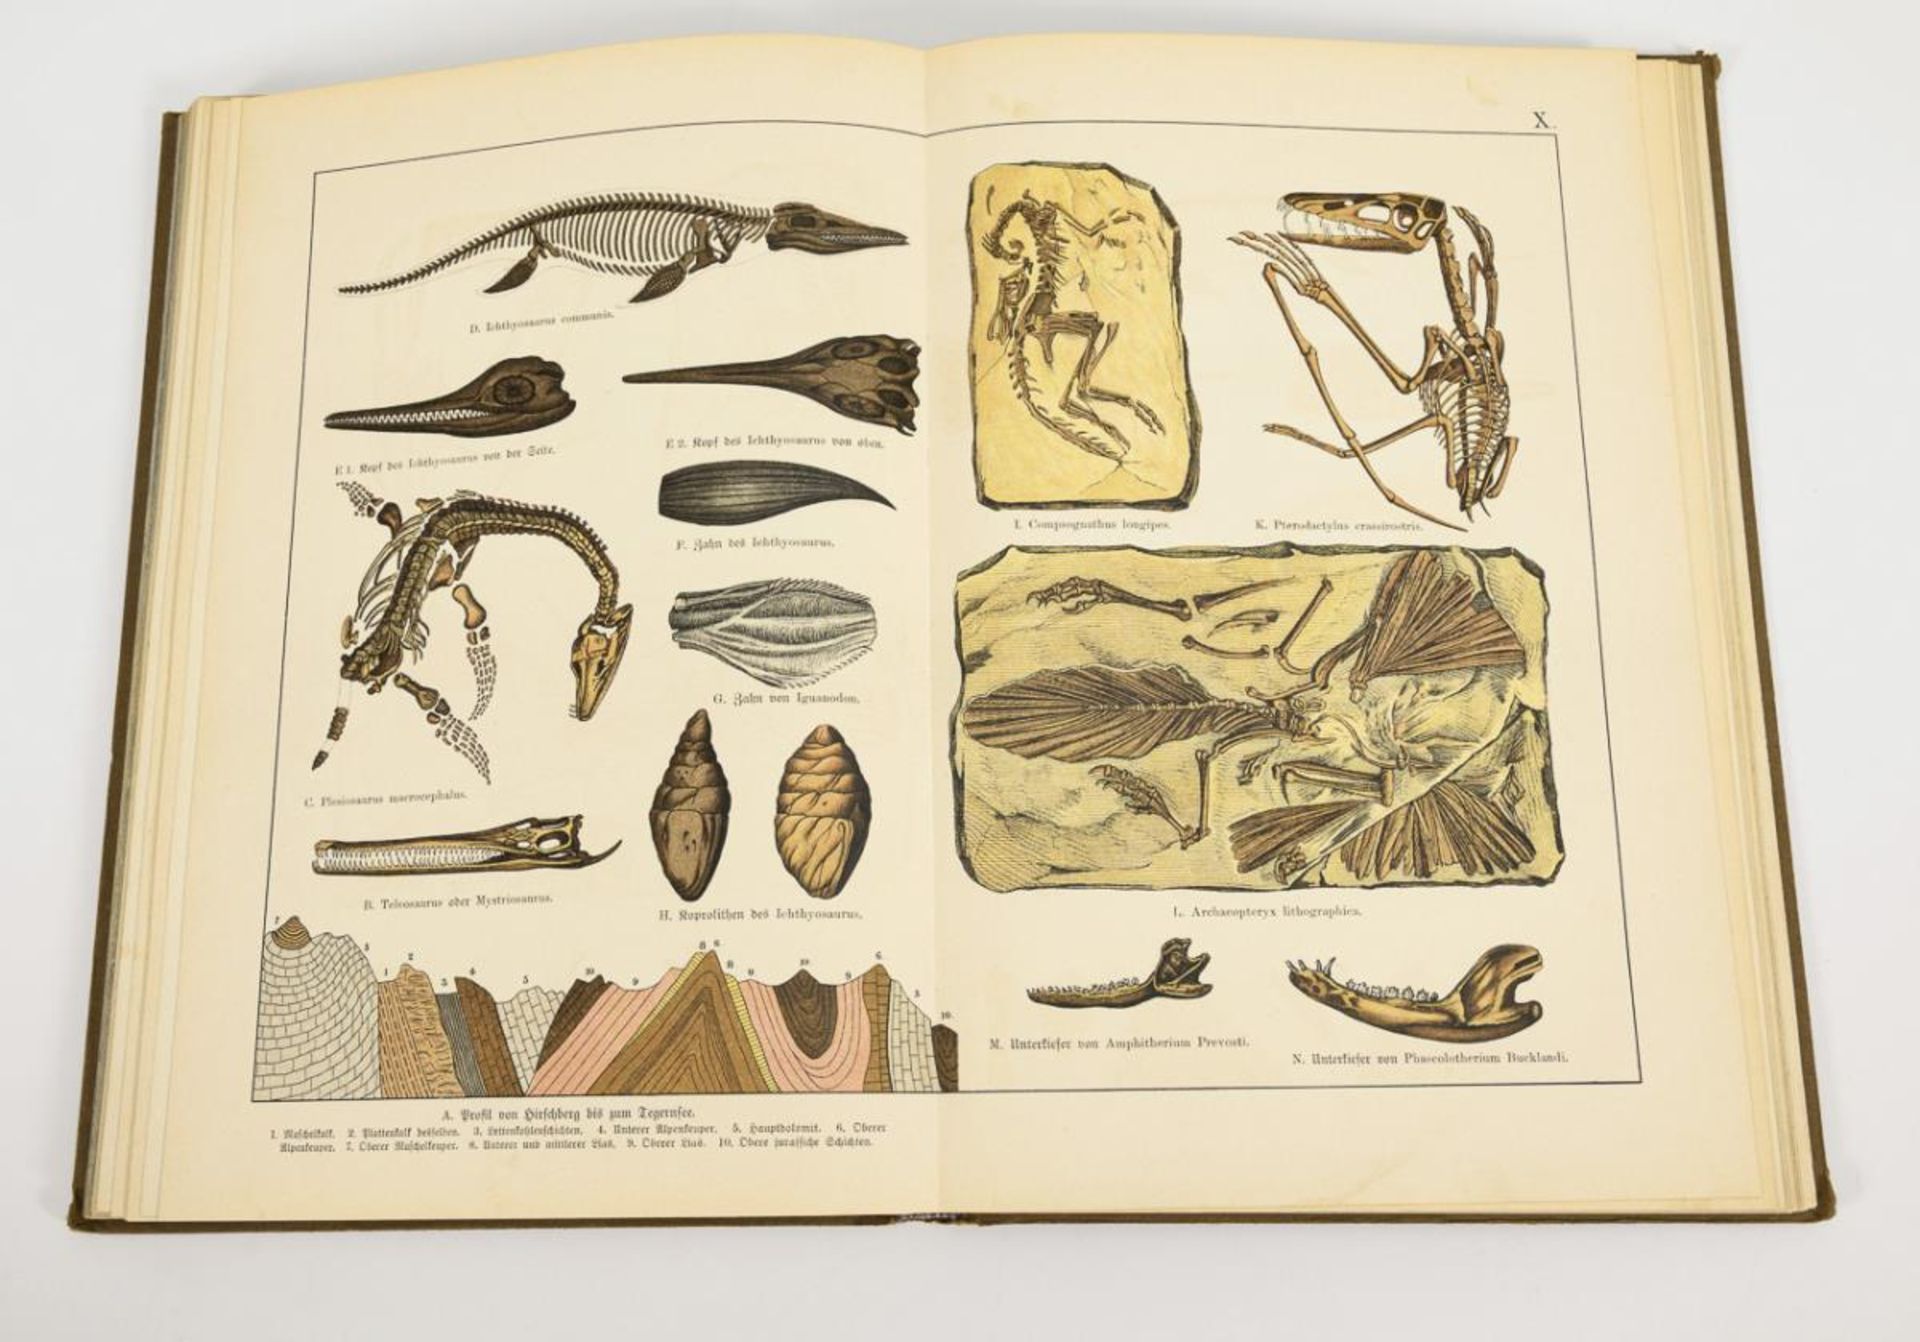 SCHUBERT, G.H. von. "Naturgeschichte Geologie, Mineralreich, Paläontologie". - Image 3 of 4